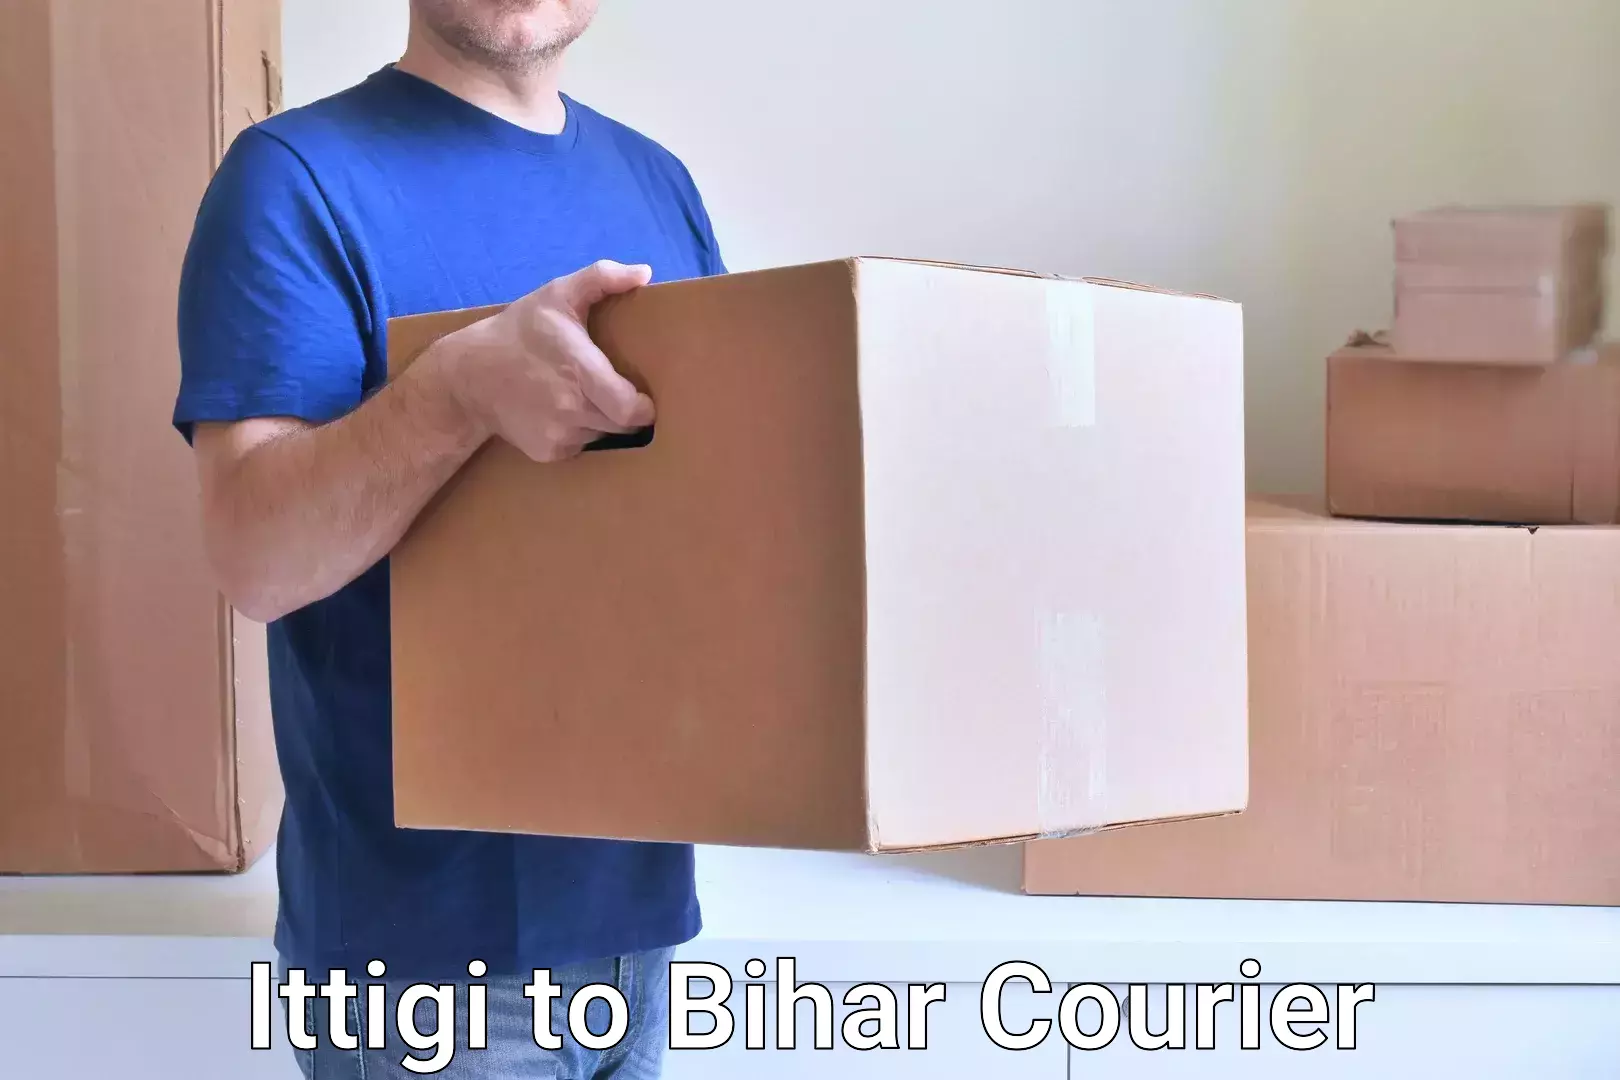 User-friendly courier app Ittigi to Mohammadpur